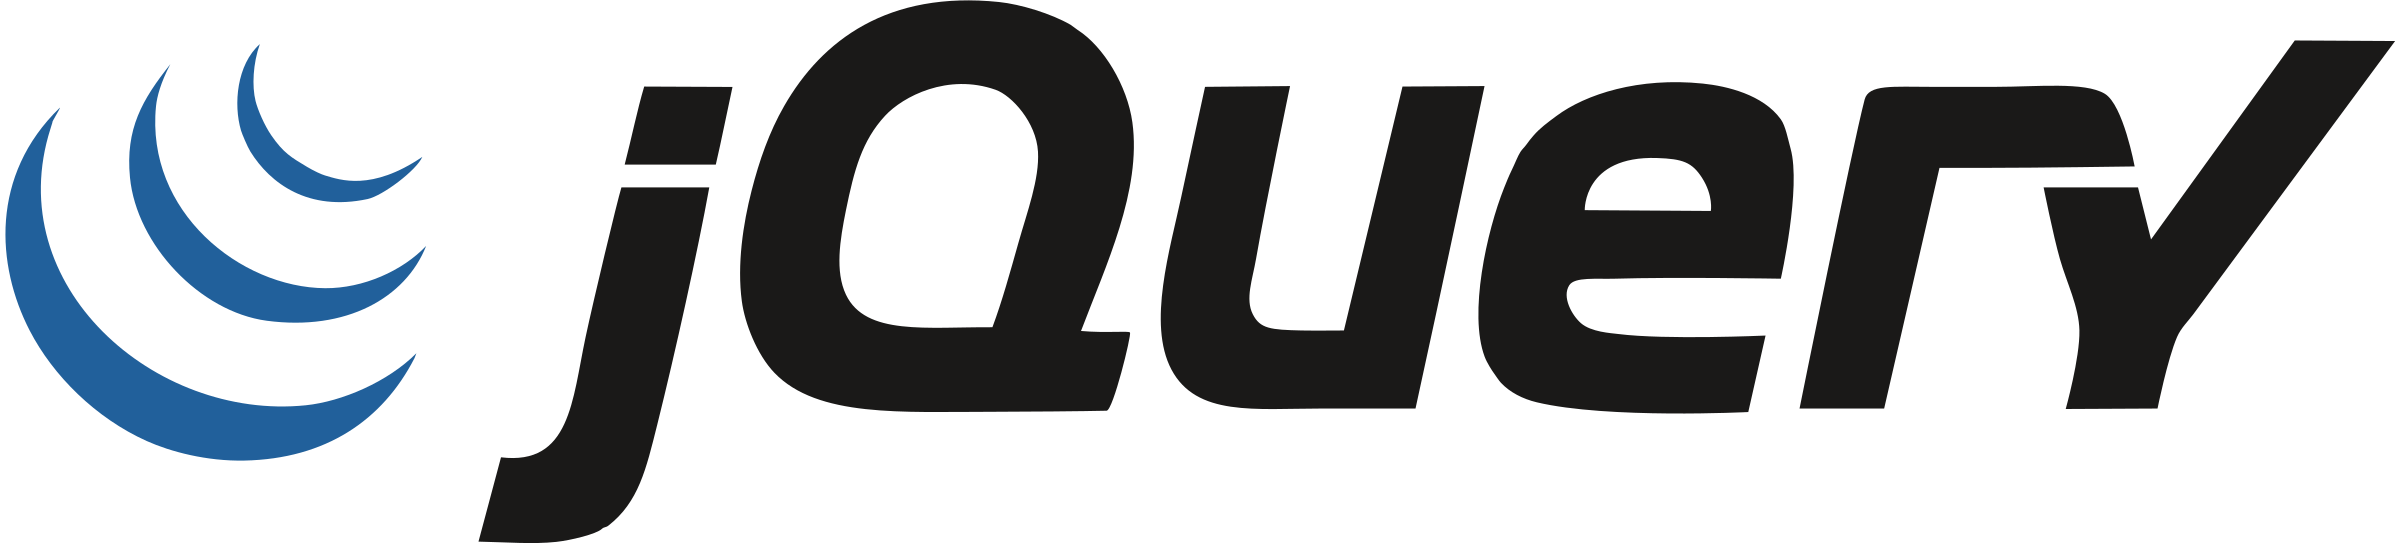 Jquery Logo - Pluspng